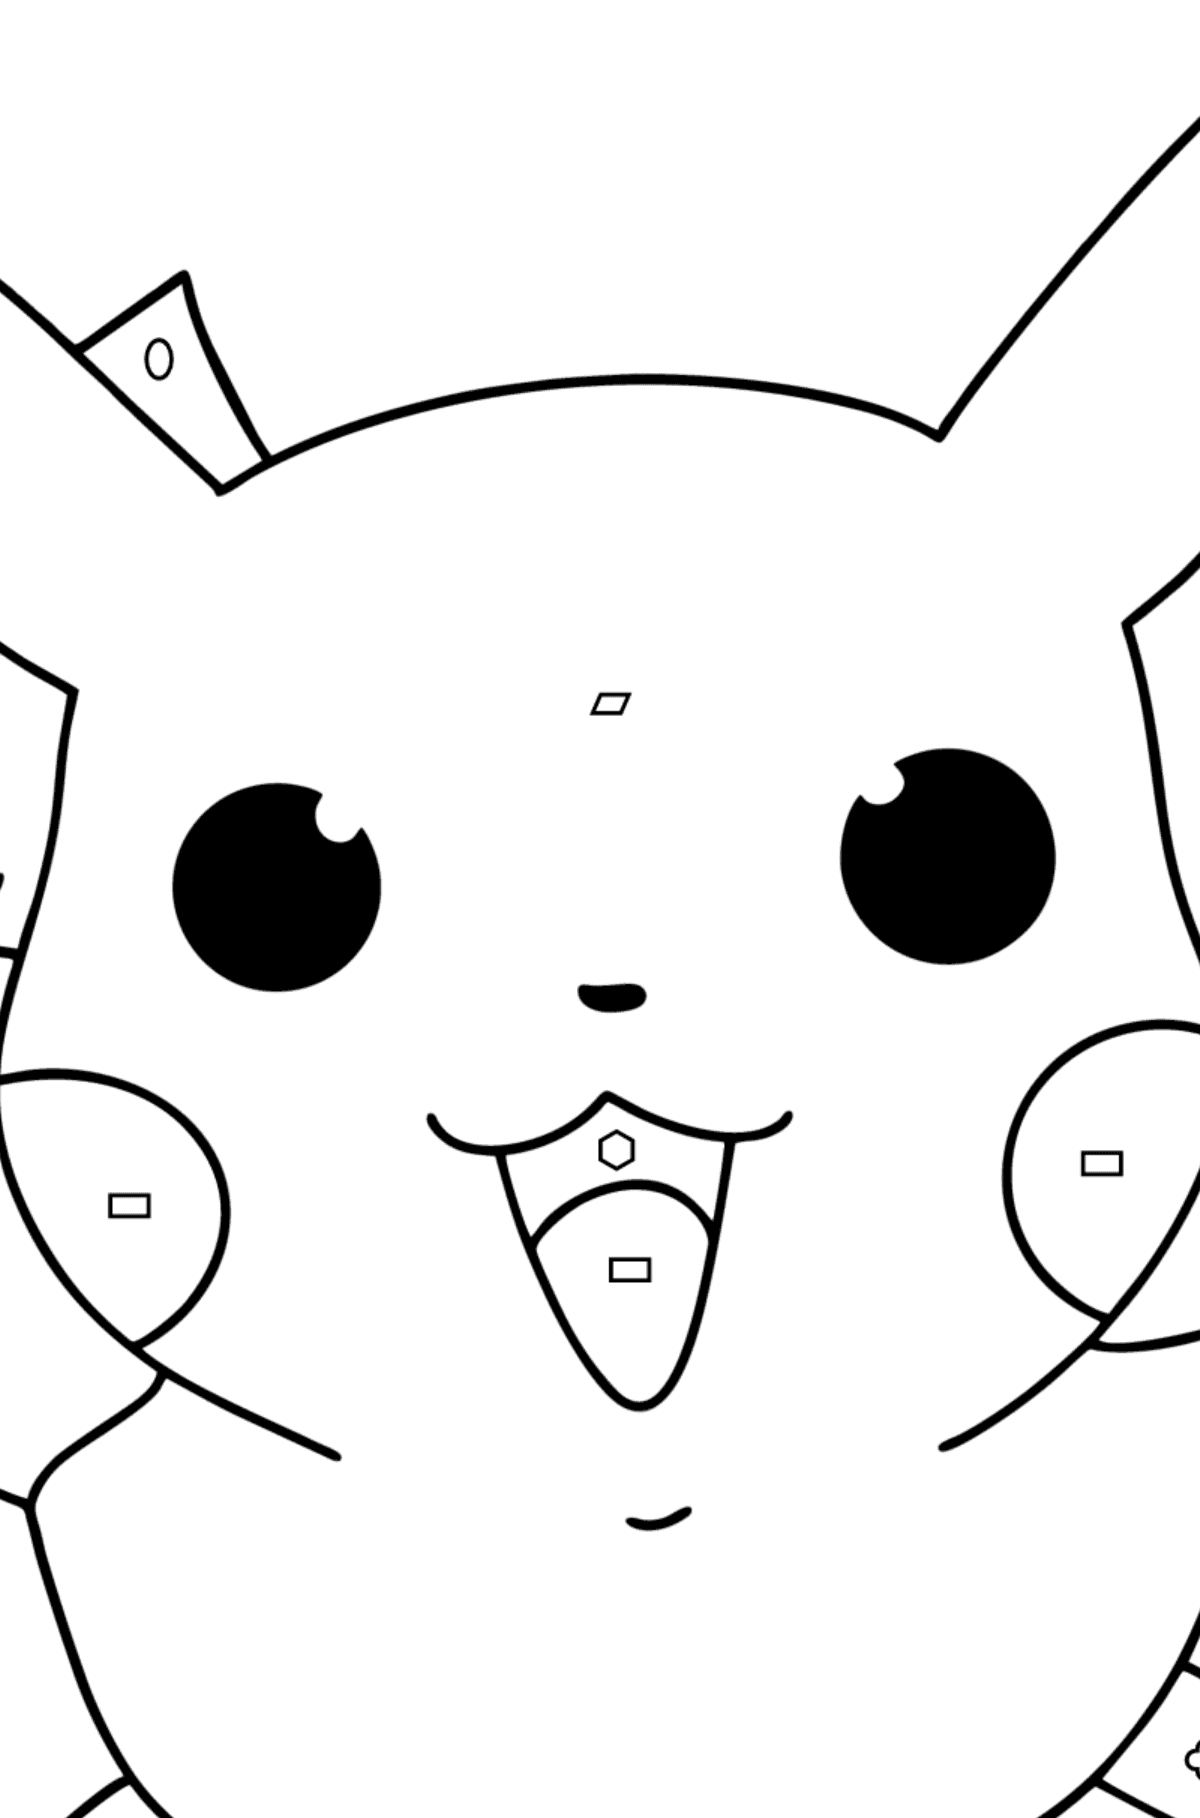 Раскраска Покемон XY Pikachu - Картинка высокого качества для Детей